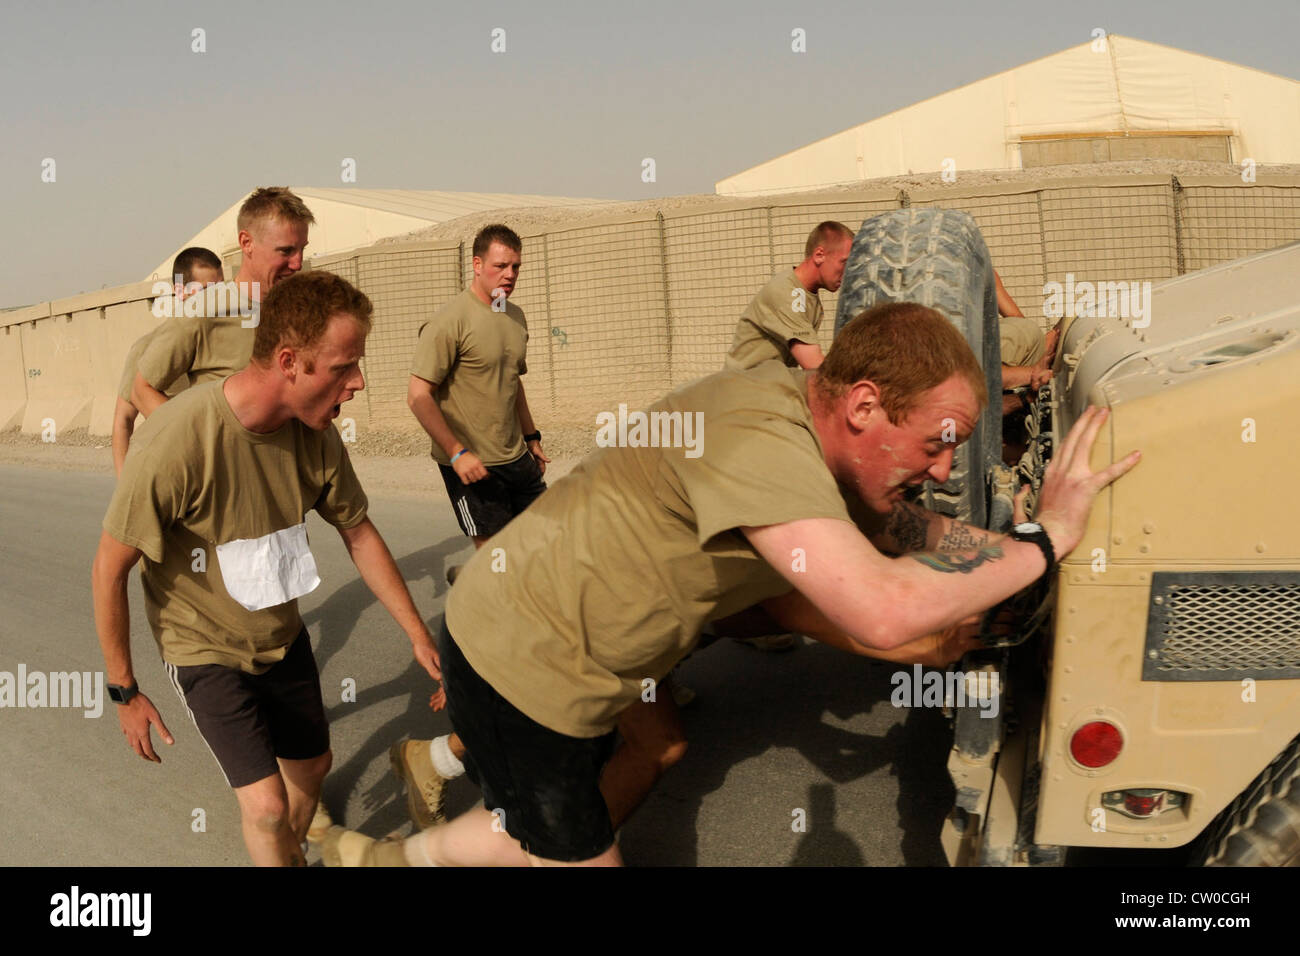 Soldaten mit den britischen armyâ €™s KSSG jubeln auf ihre Freunde, während sie schieben einen Humvee während der Olympischen Spiele statt 3. August 2012 in Kandahar Airfield, Afghanistan. Sieben Teams nahmen an den Olympischen Spielen Teil, darunter sechs anstrengende Events, darunter ein 5K-Lauf, Reifenflip, Liegestütze, Humvee-Push, Wurftrage und Tauziehen. Die Veranstaltung wurde vom Focus 5/6 Leadership Council auf dem Kandahar Airfield gesponsert und die Einnahmen wurden zwischen dem rat und der Wounded Warrior Foundation aufgeteilt. Stockfoto